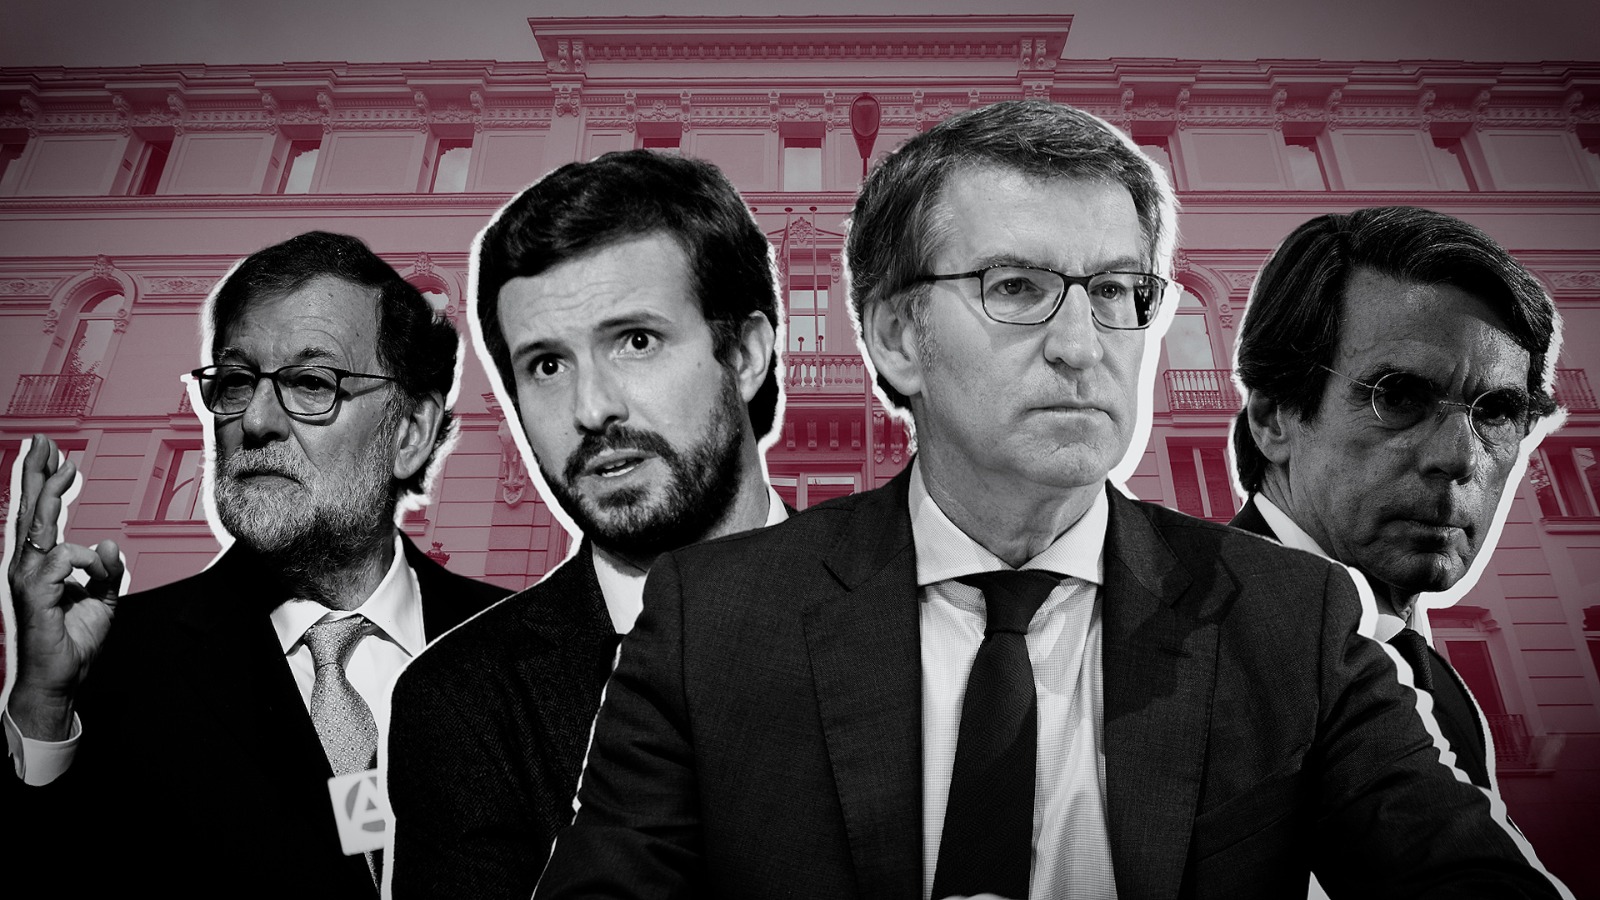 Montaje de Alberto Núñez Feijóo, Pablo Casado, Mariano Rajoy y José María Aznar. Elaboración propia.